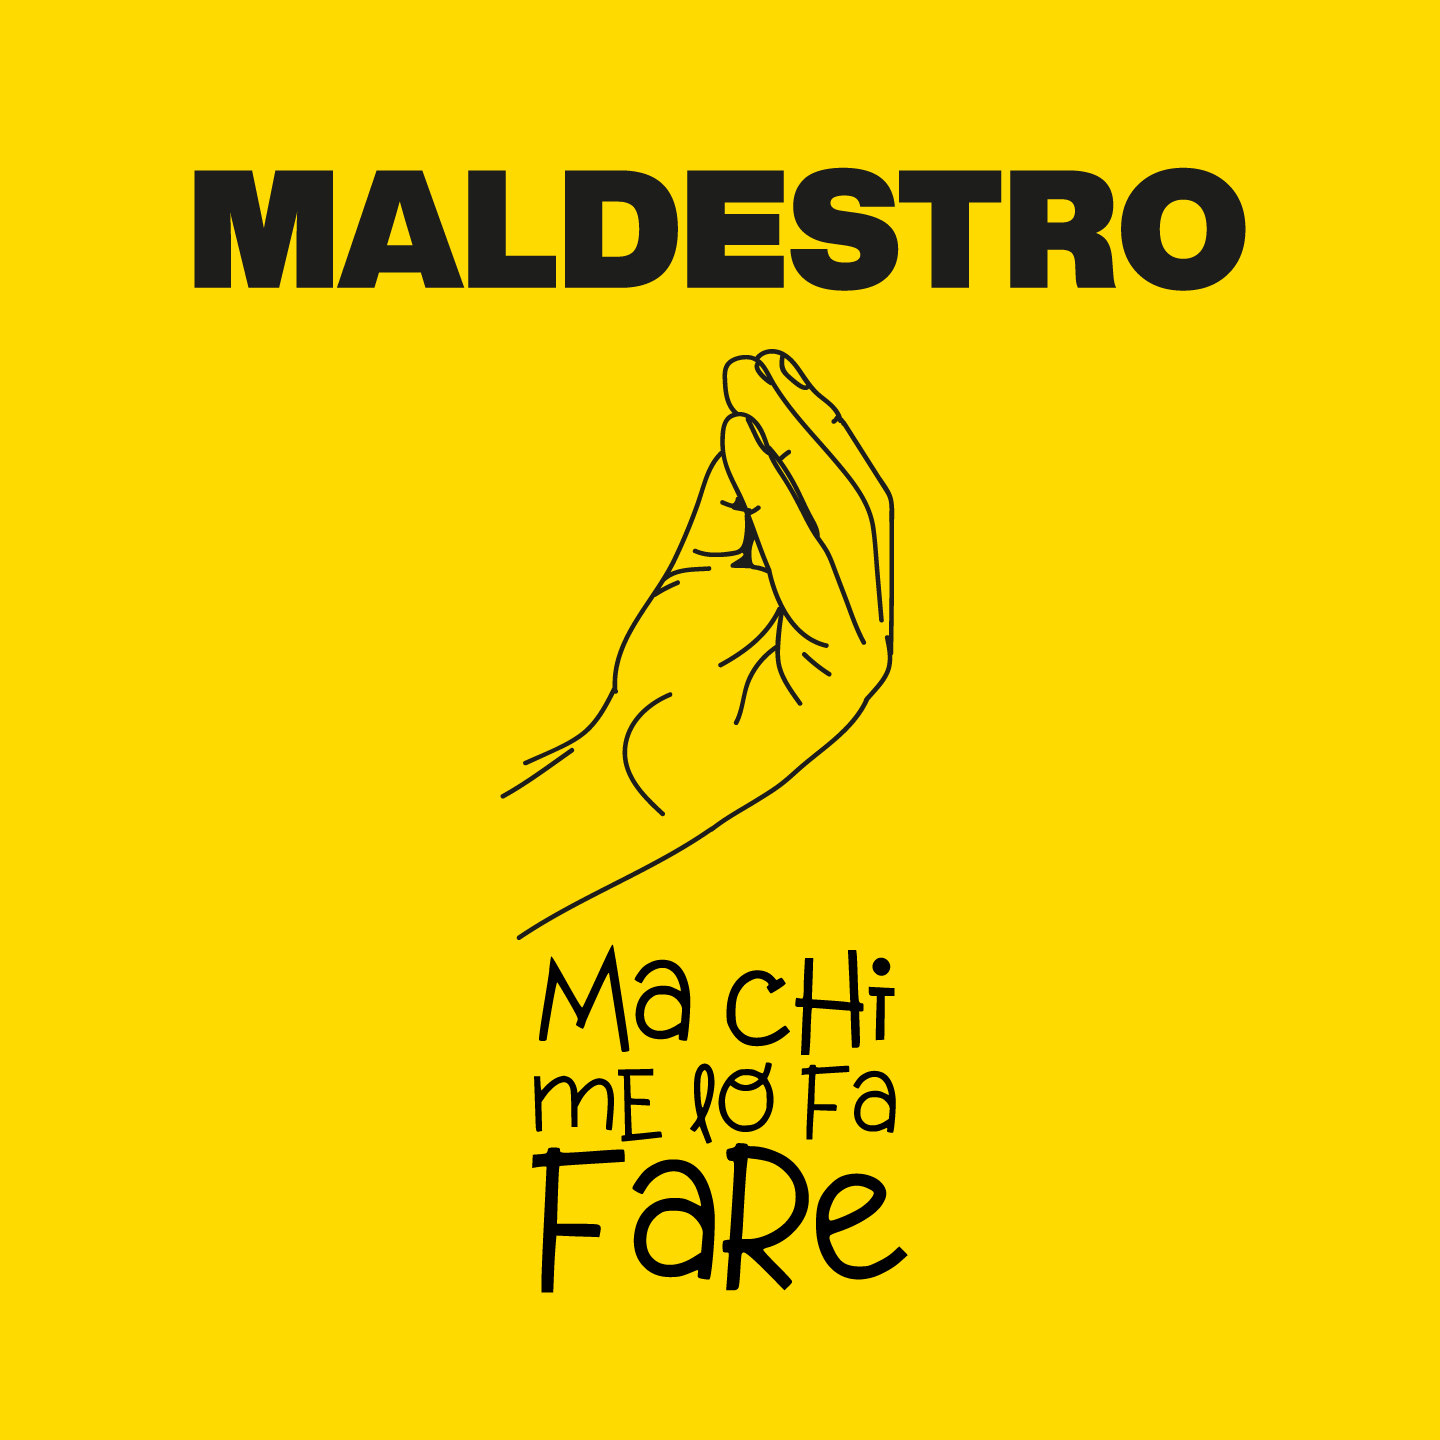 MALDESTRO - esce venerdì 04 settembre 